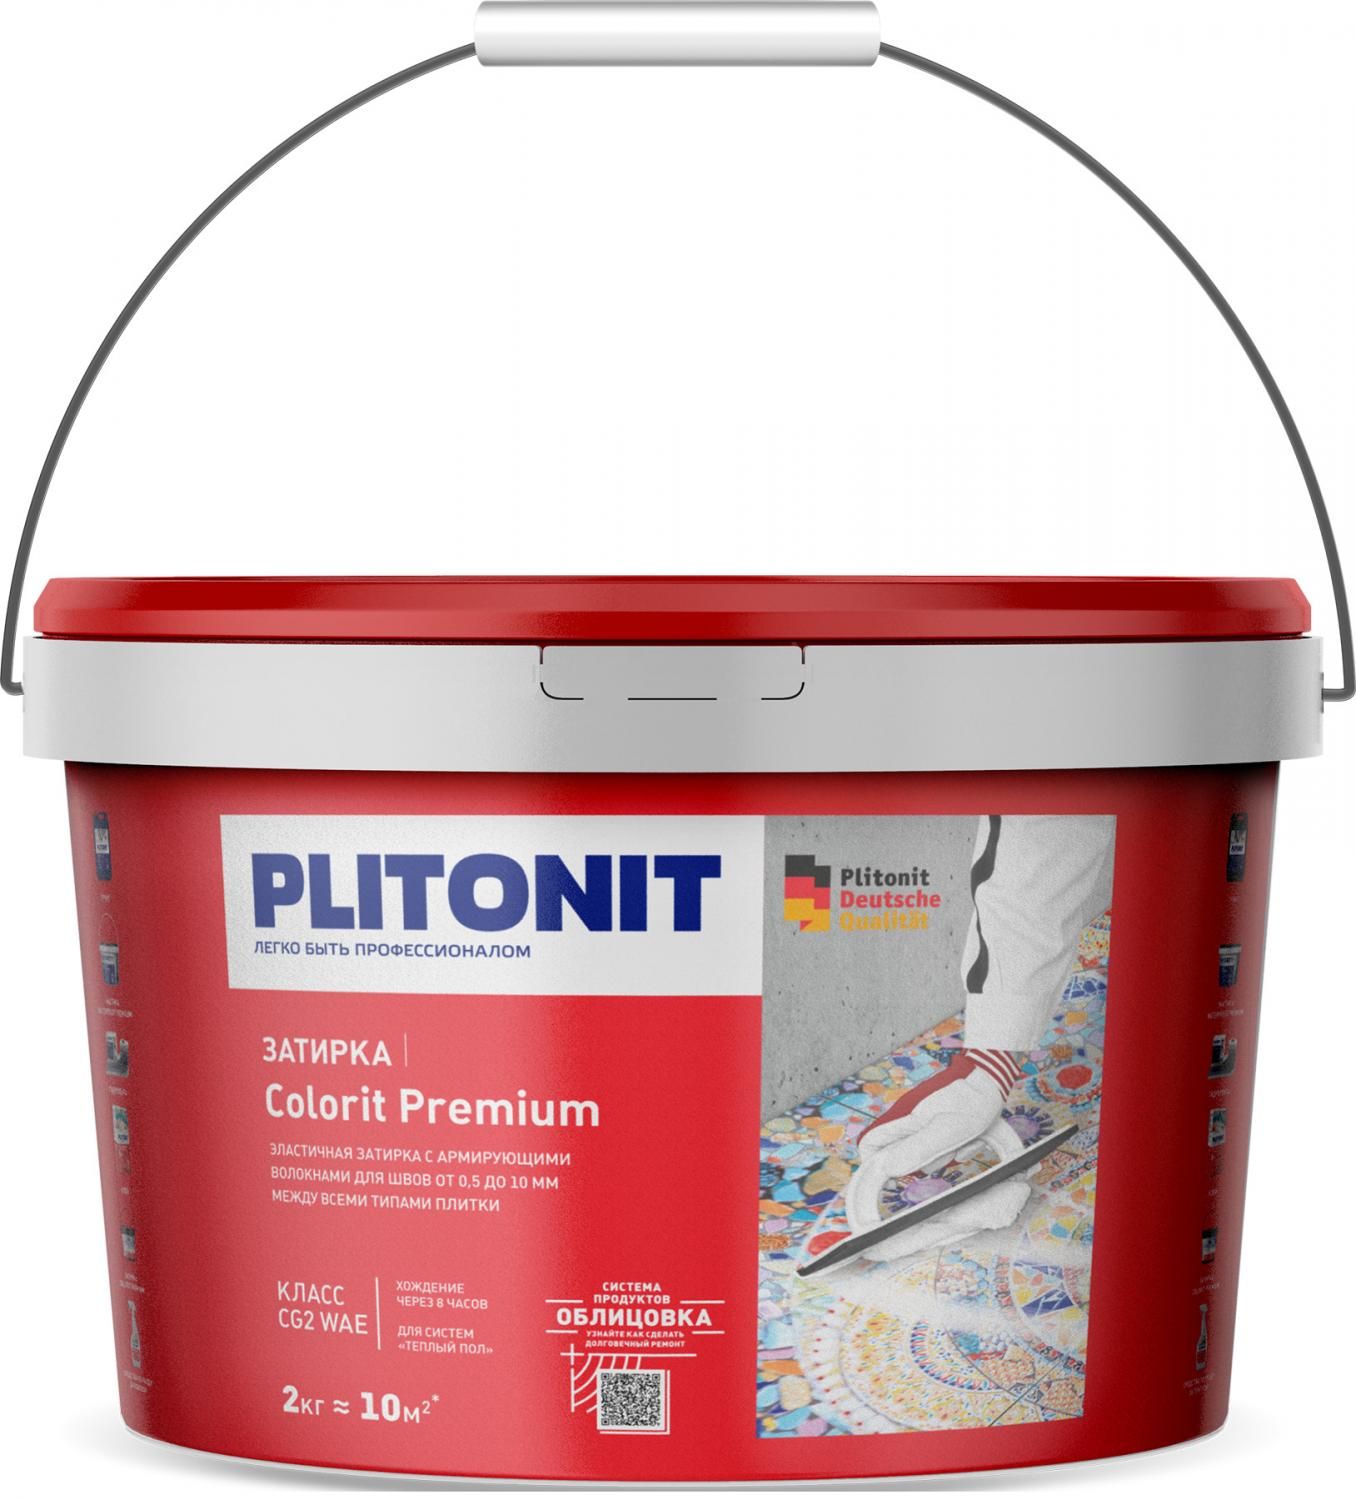 Купить Затирка Plitonit Colorit Premium светло-желтая 2 кг цементная